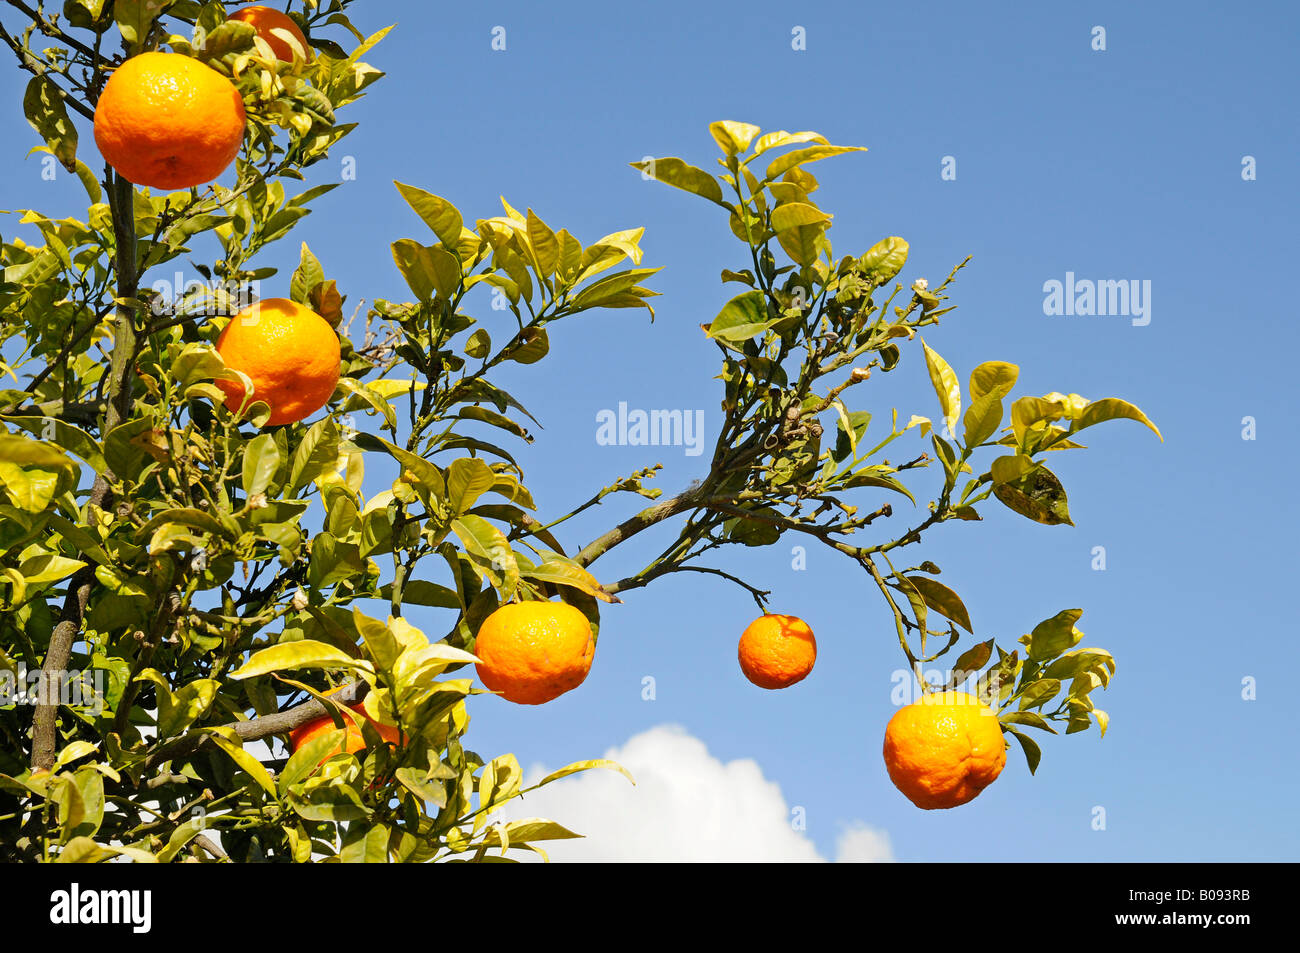 Mandarins, mandarin oranges (Citrus reticulata) in a mandarin tree, La Nucia, Alicante, Costa Blanca, Spain Stock Photo